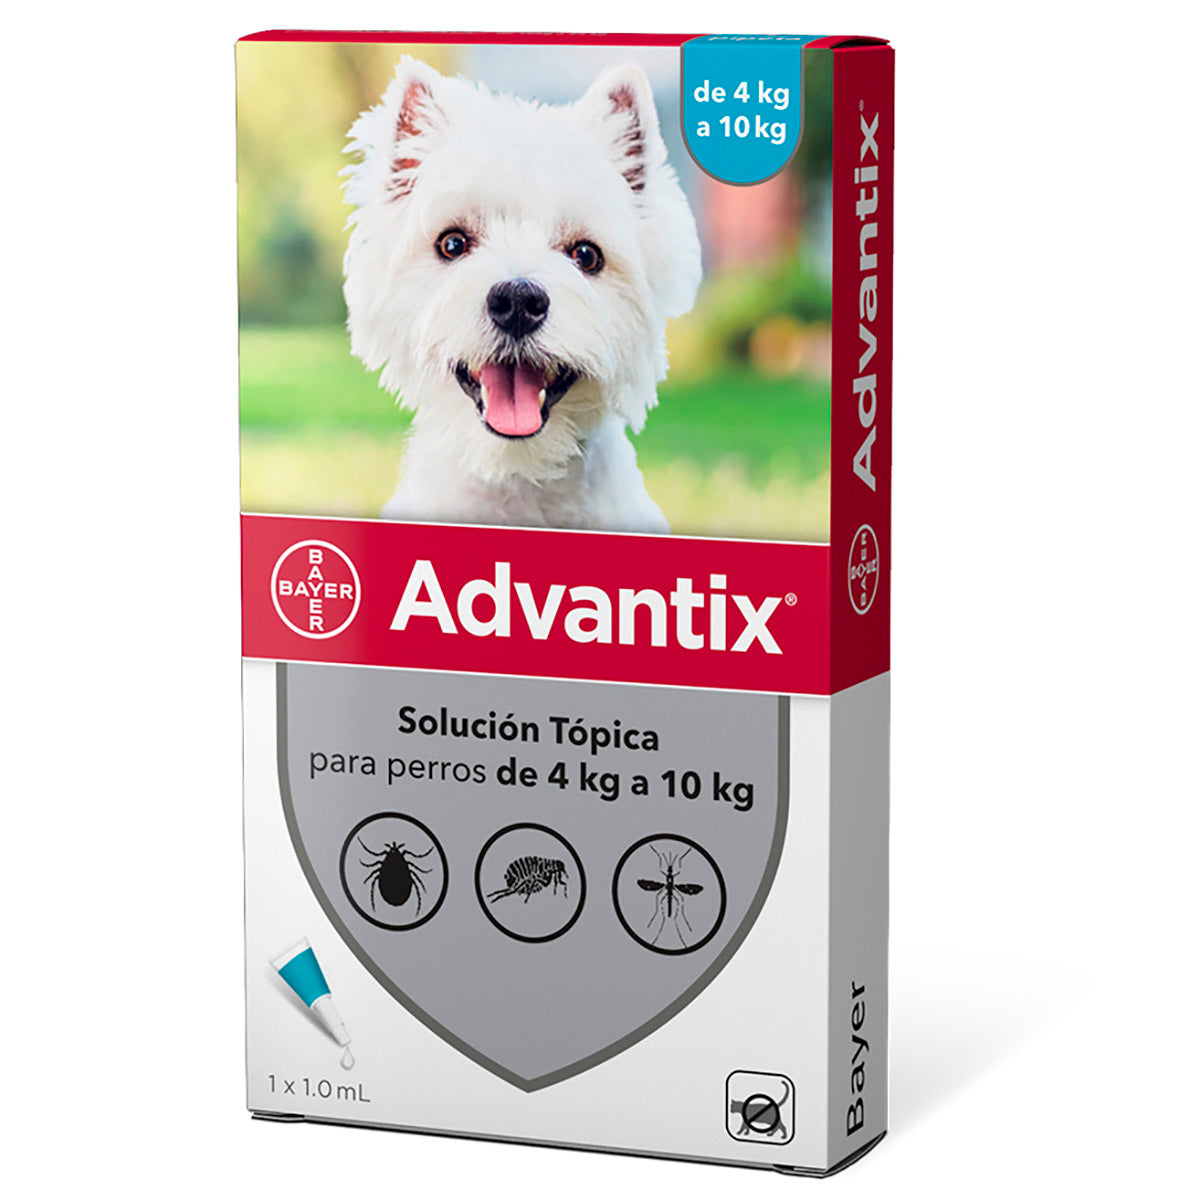 Ampolletas Advantix® Triple Protección contra garrapatas, pulgas y mosquitos.